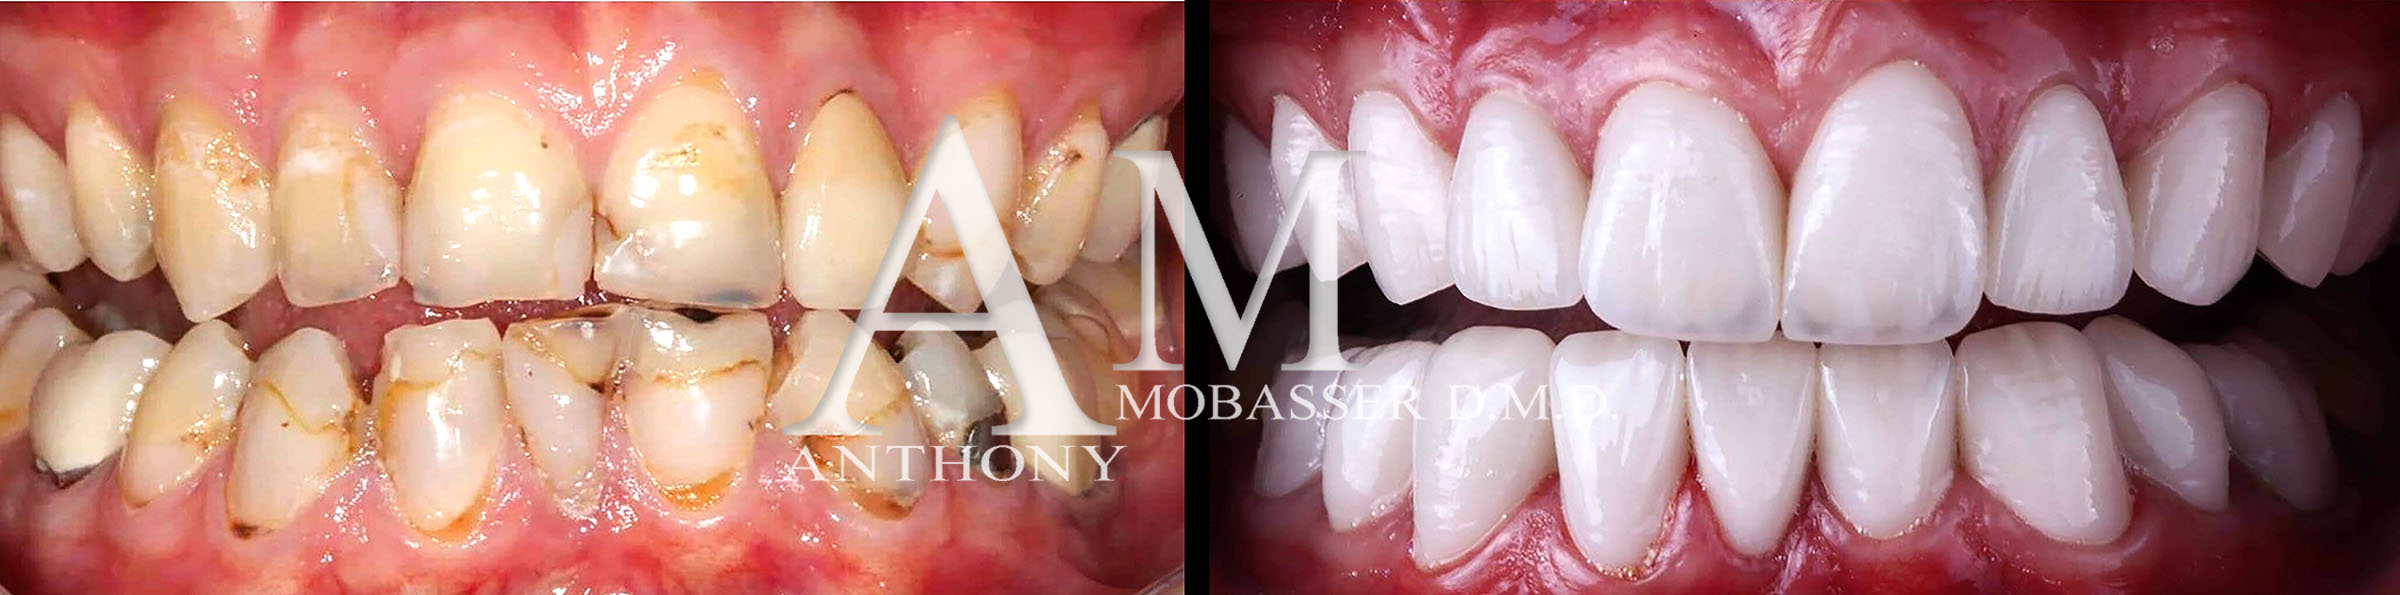 Mejor Dentista Estético del Mundo | Dr. Anthony Mobasser